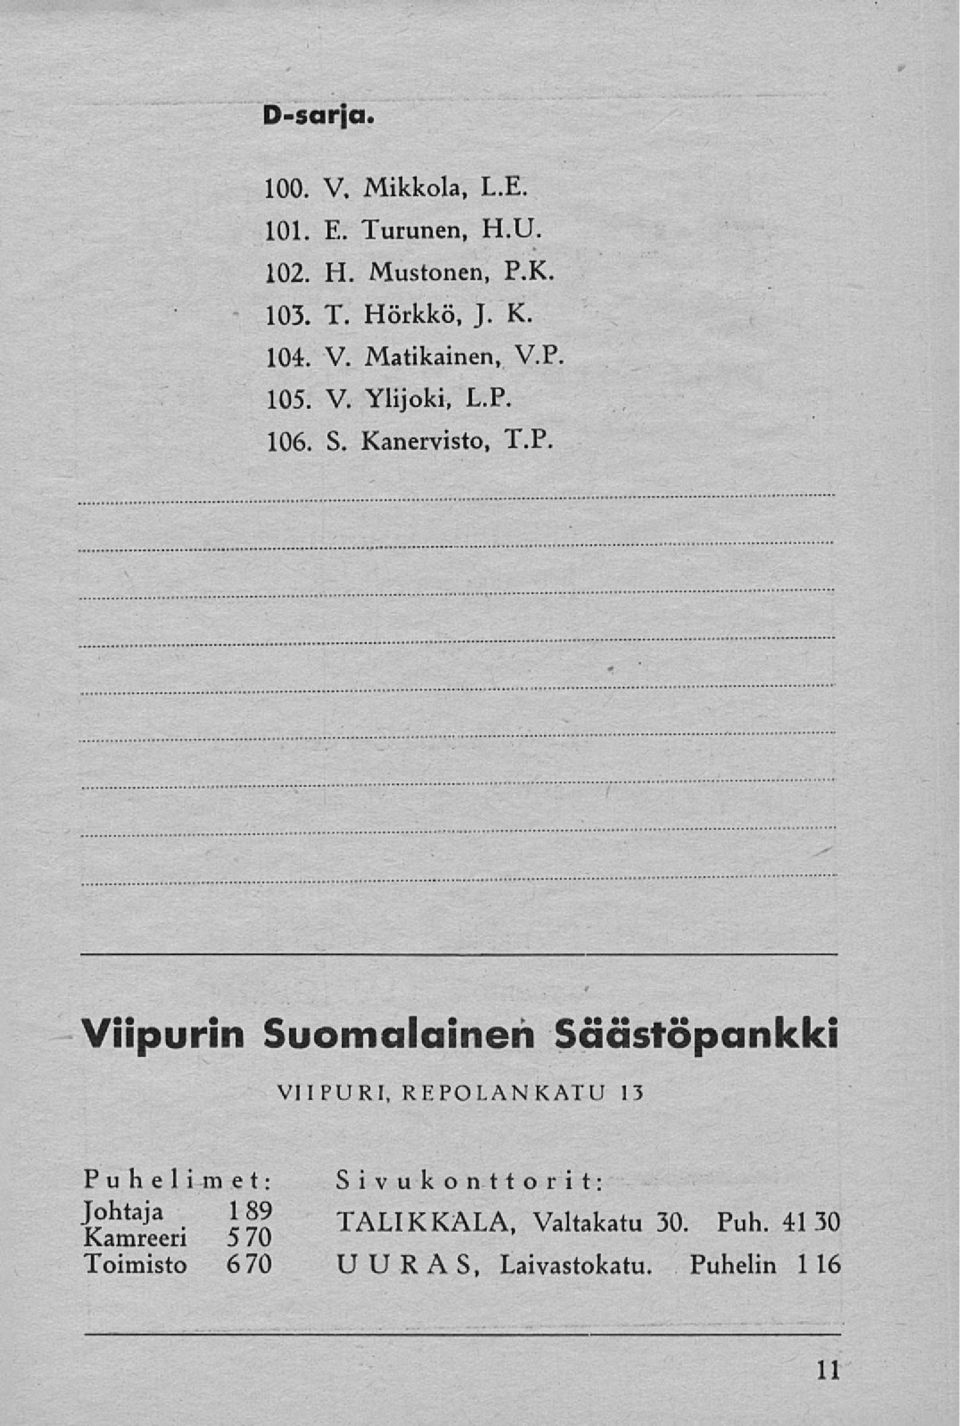 105. V Ylijoki, L.P.